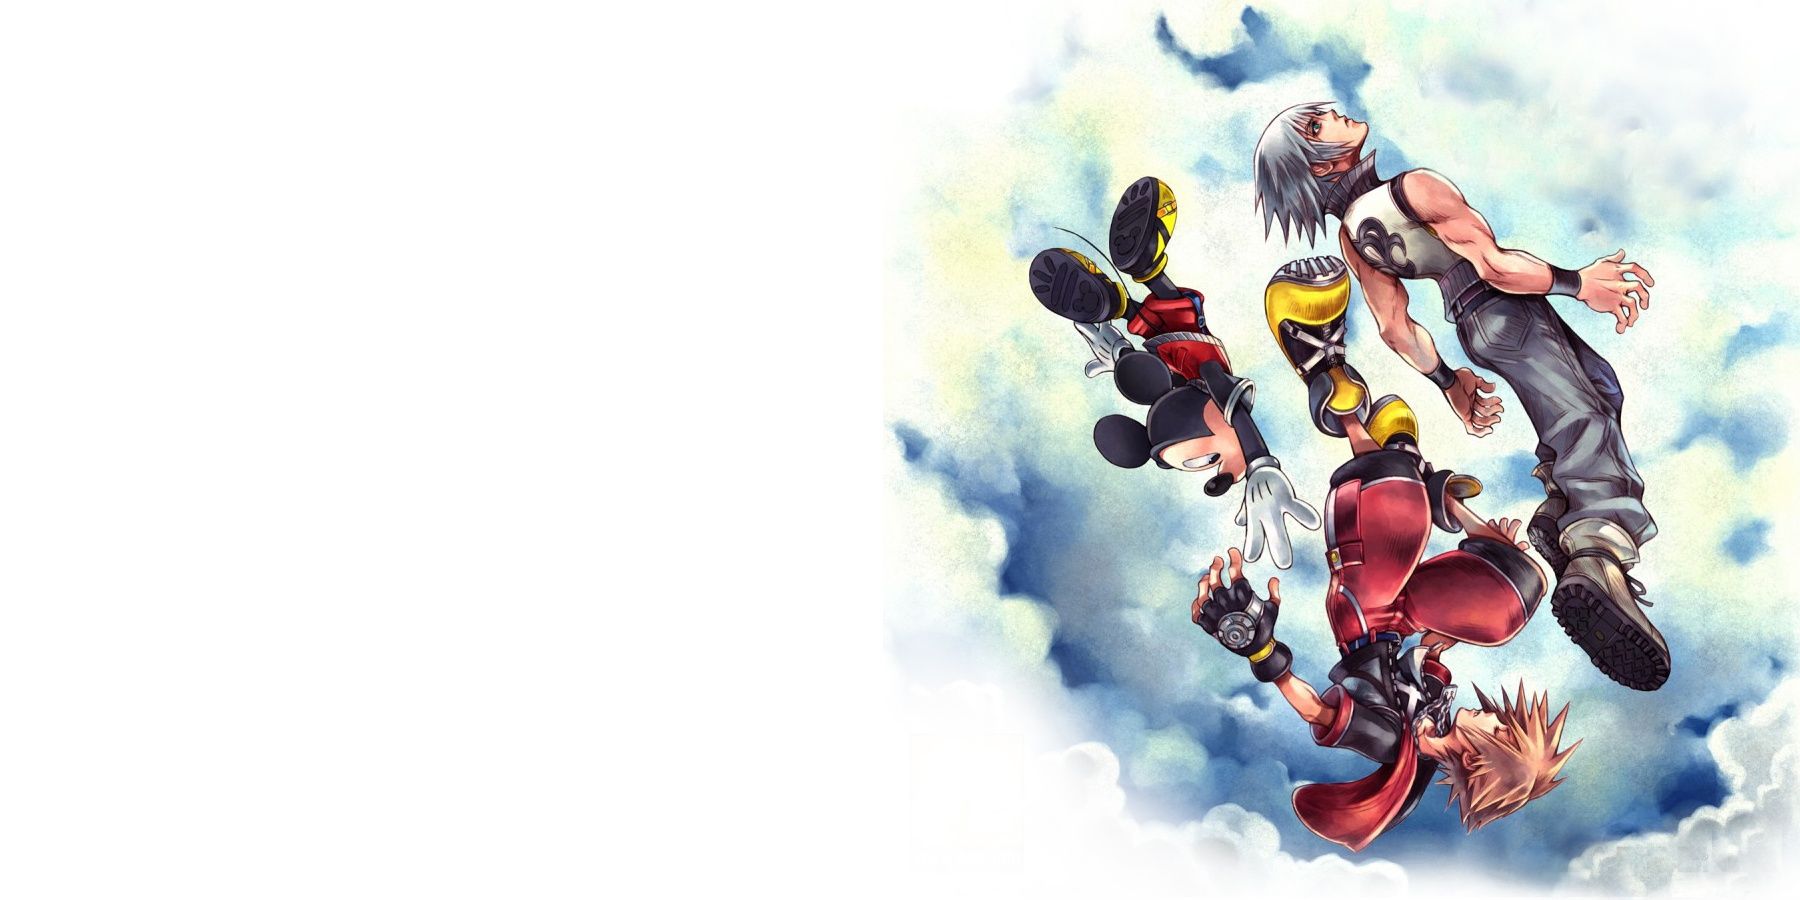 Das Cover von Kingdom Hearts Dream Drop Distance zeigt Sora, Riku und Mickey Mouse, wie sie durch Wolken fallen